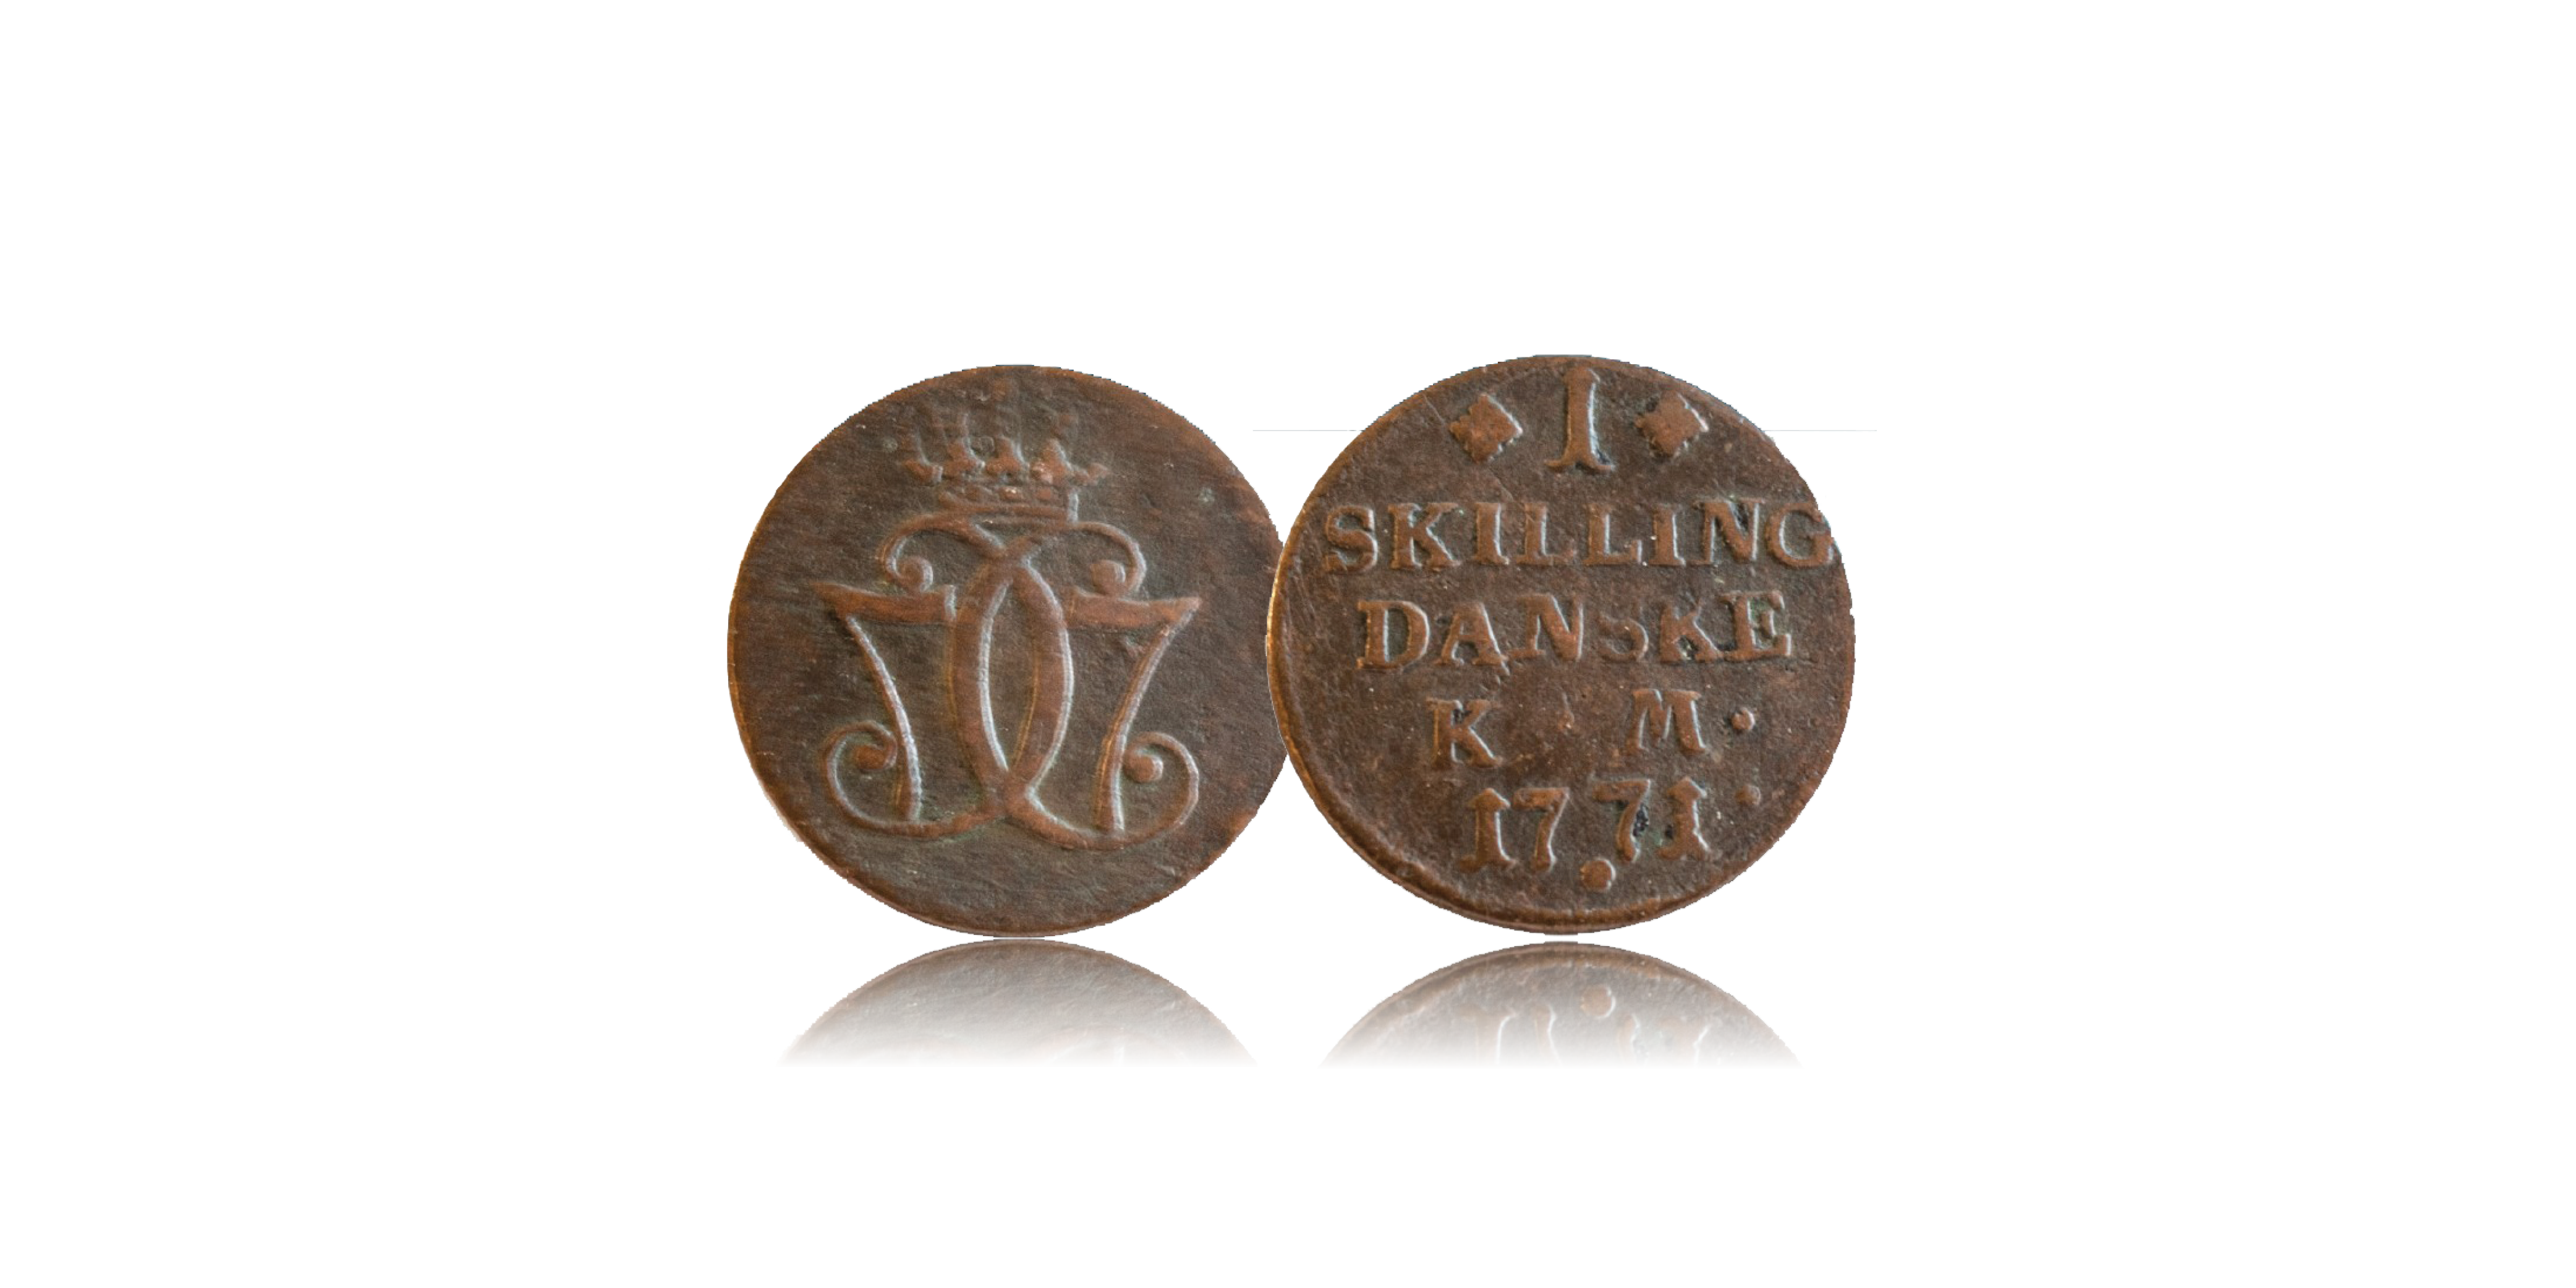   1 skilling Christian VII 1771 - Danmarks mest almindelige mønt i over 200 år